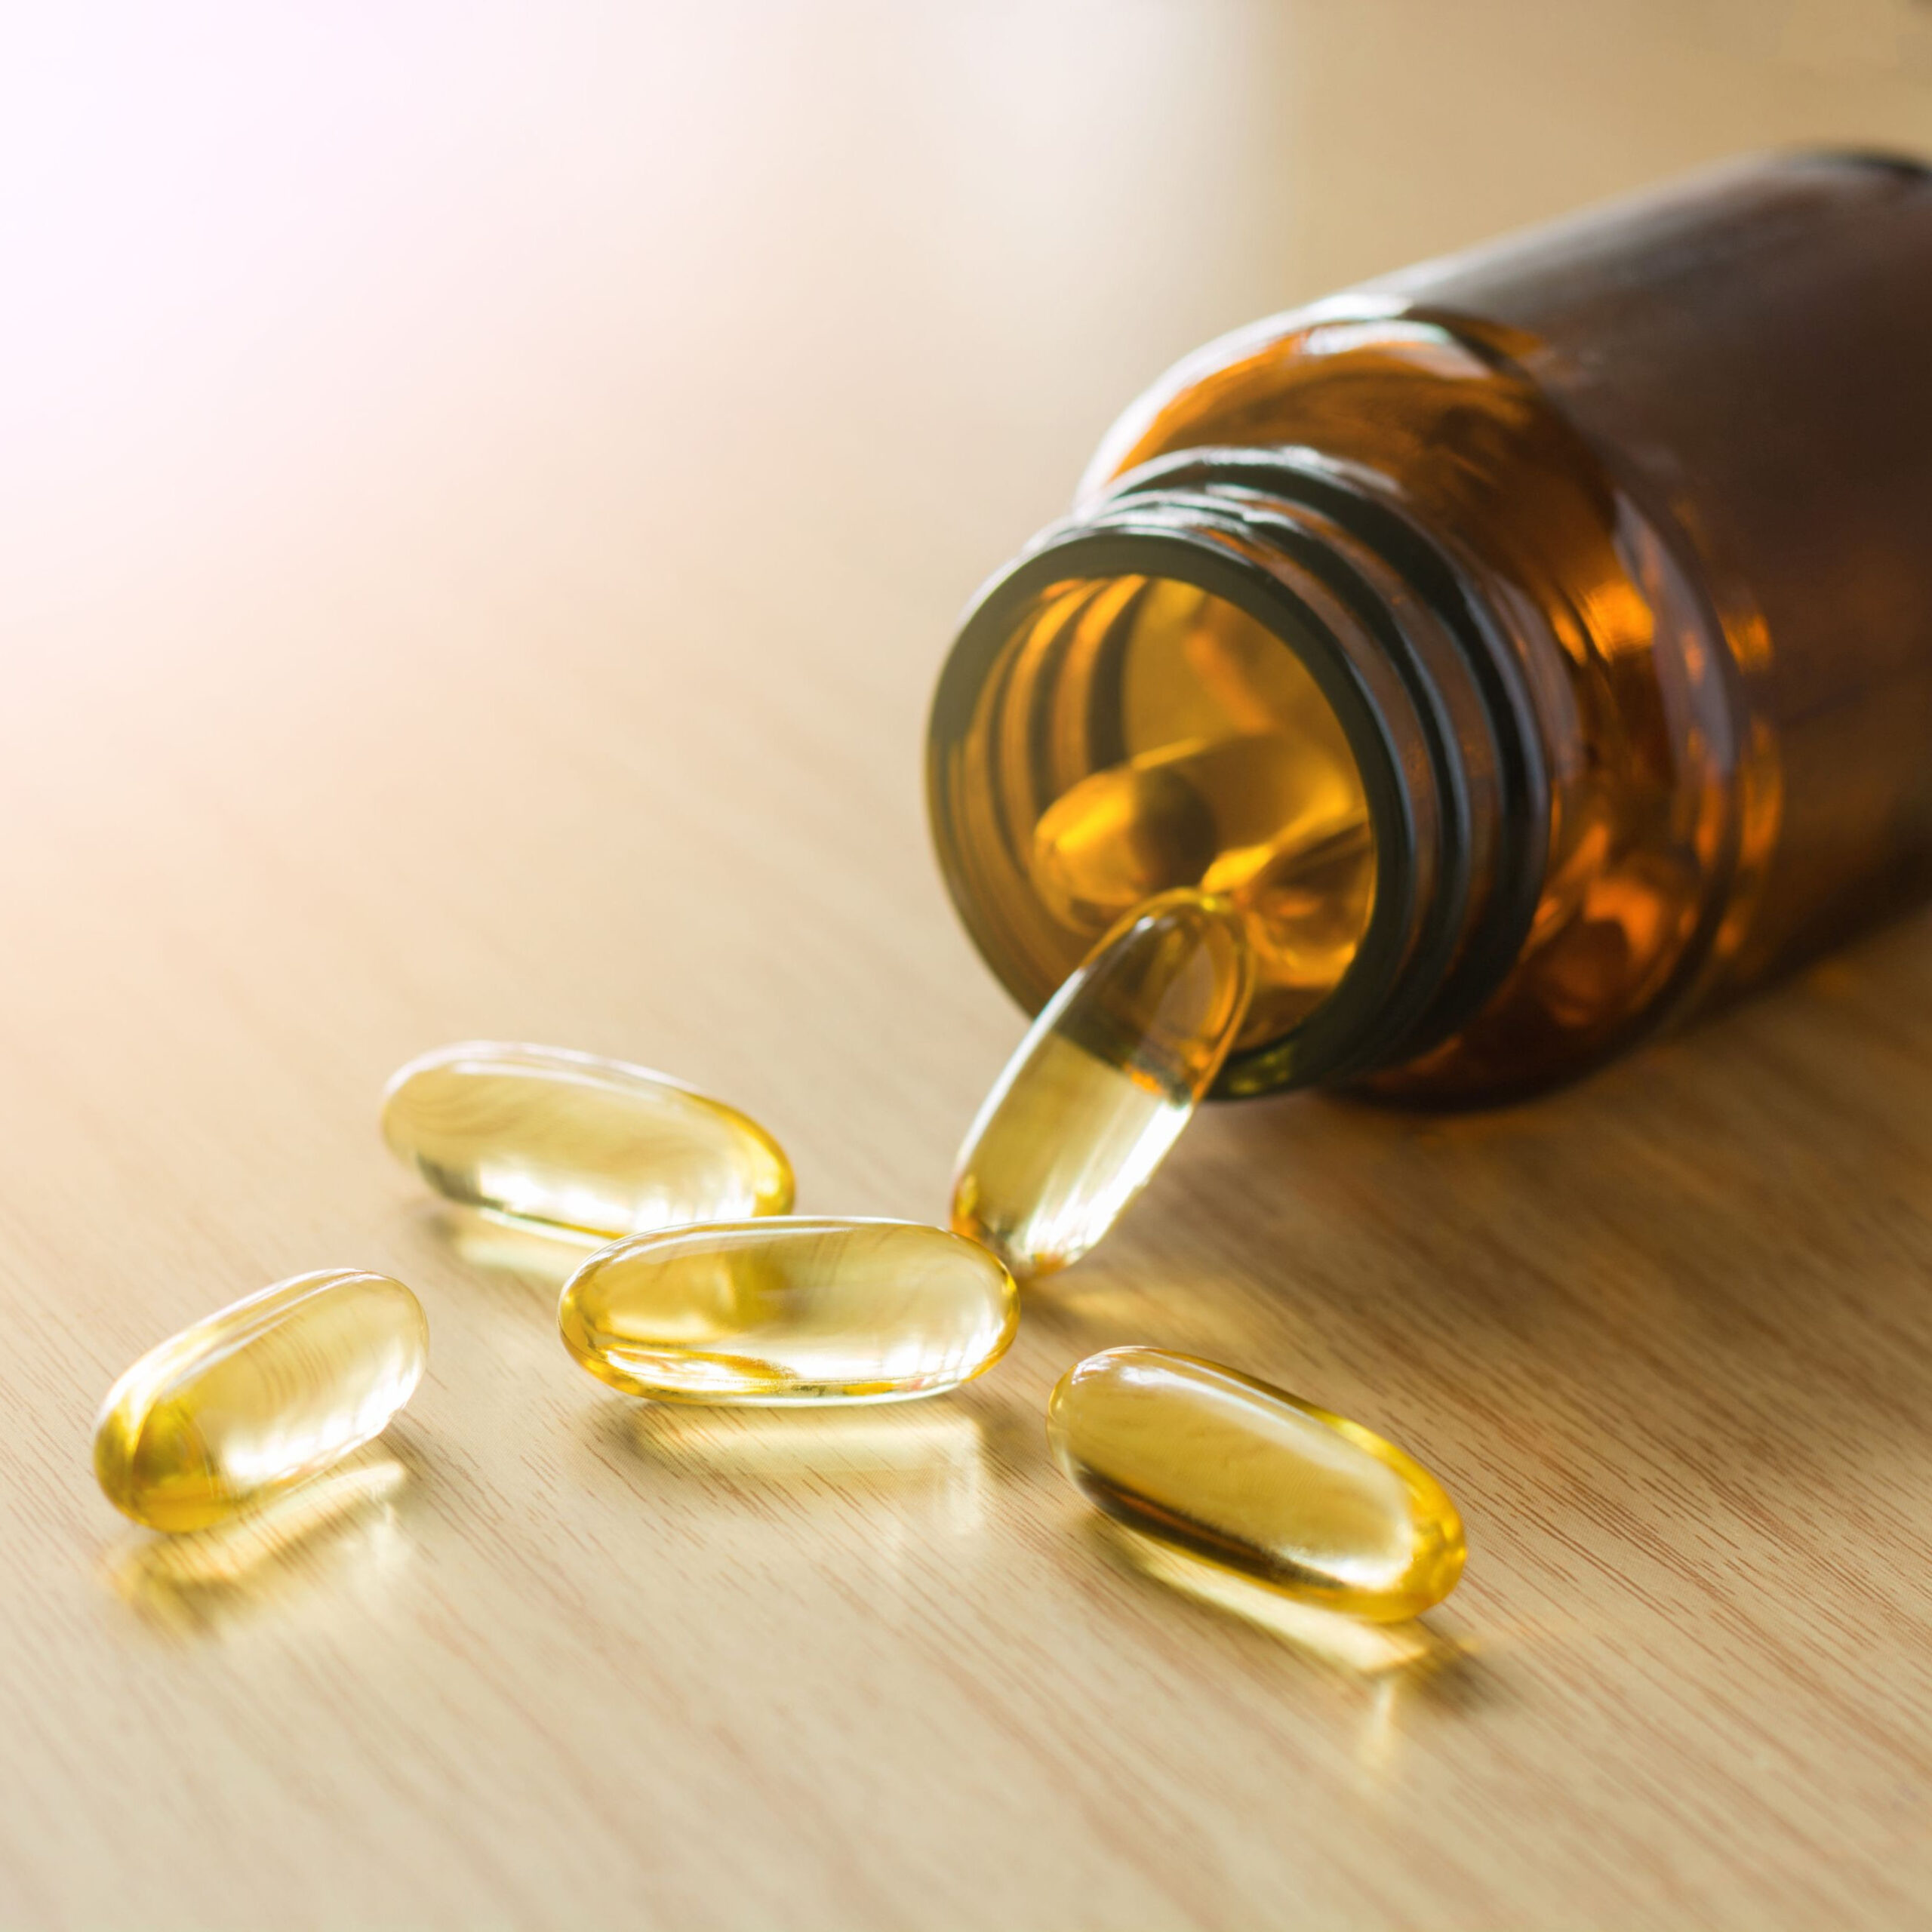 omega-3 supplements spilling out of bottle